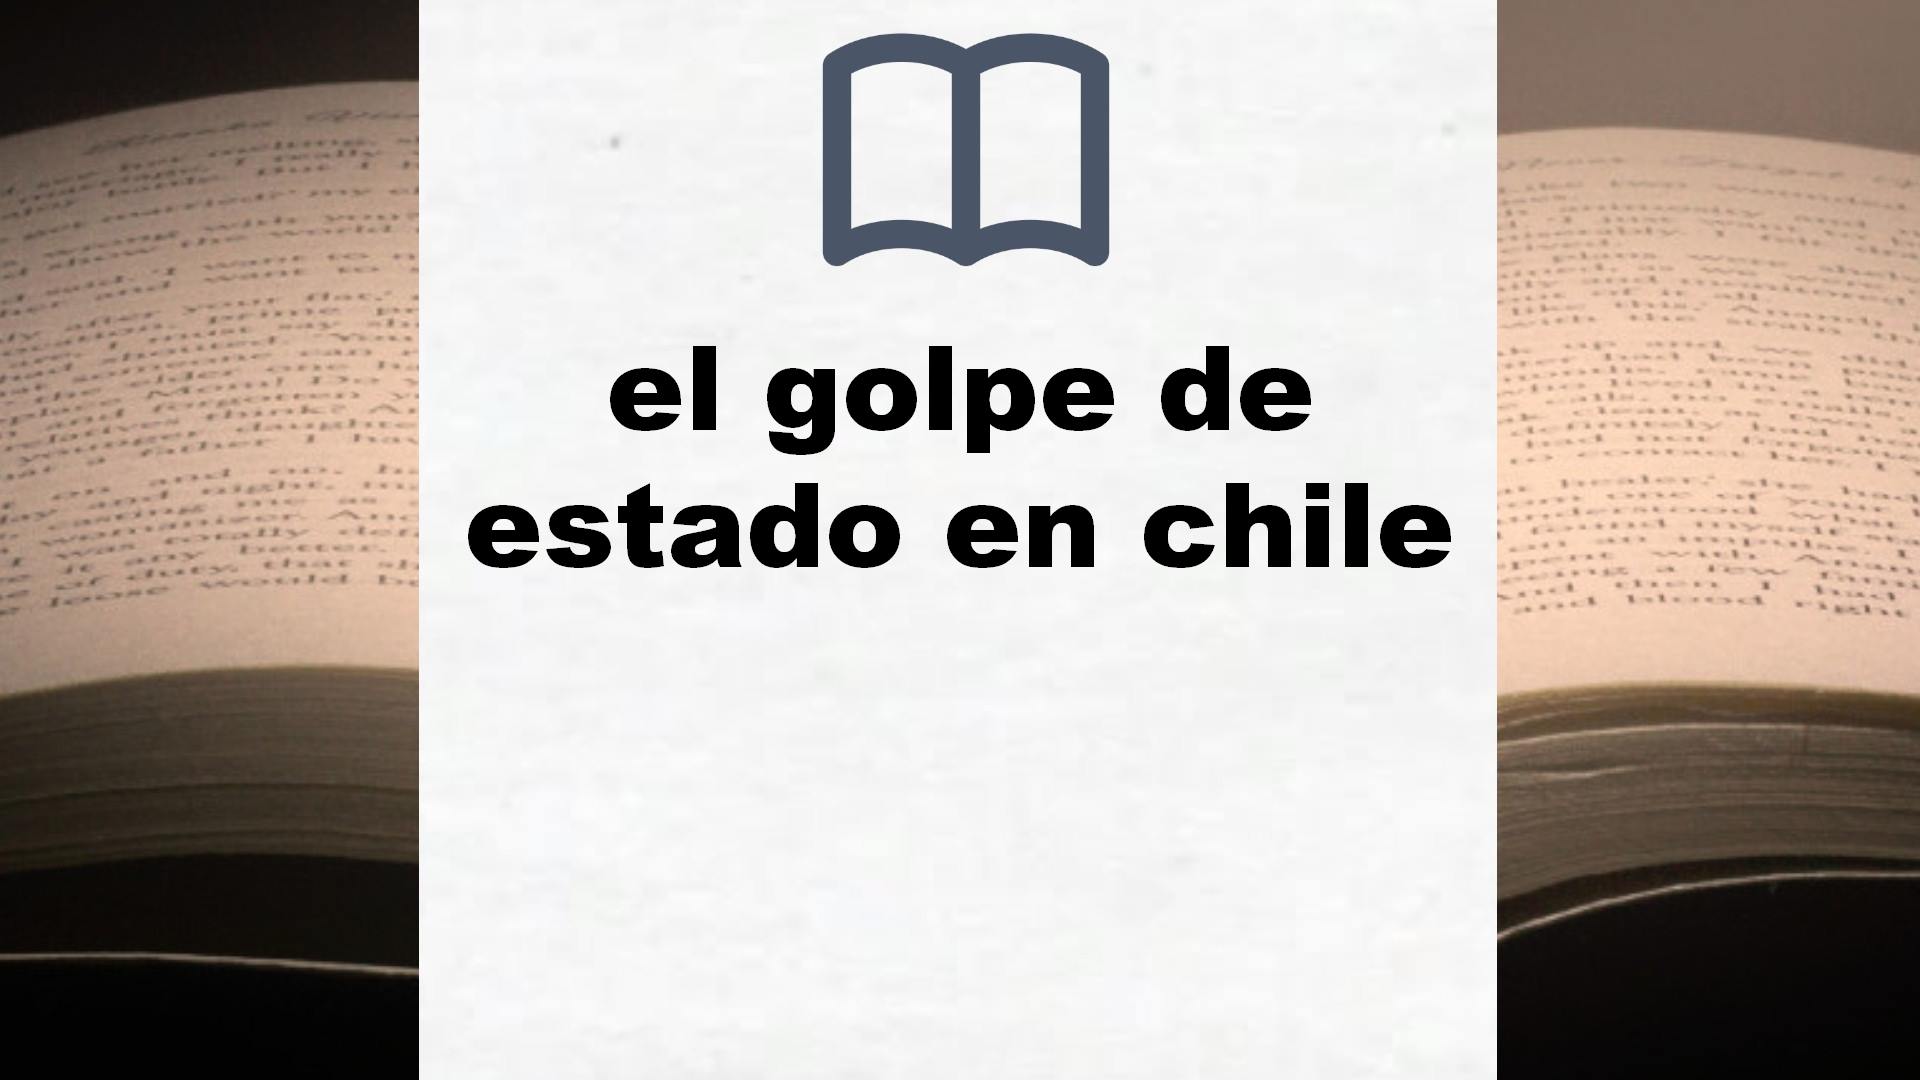 Libros sobre el golpe de estado en chile